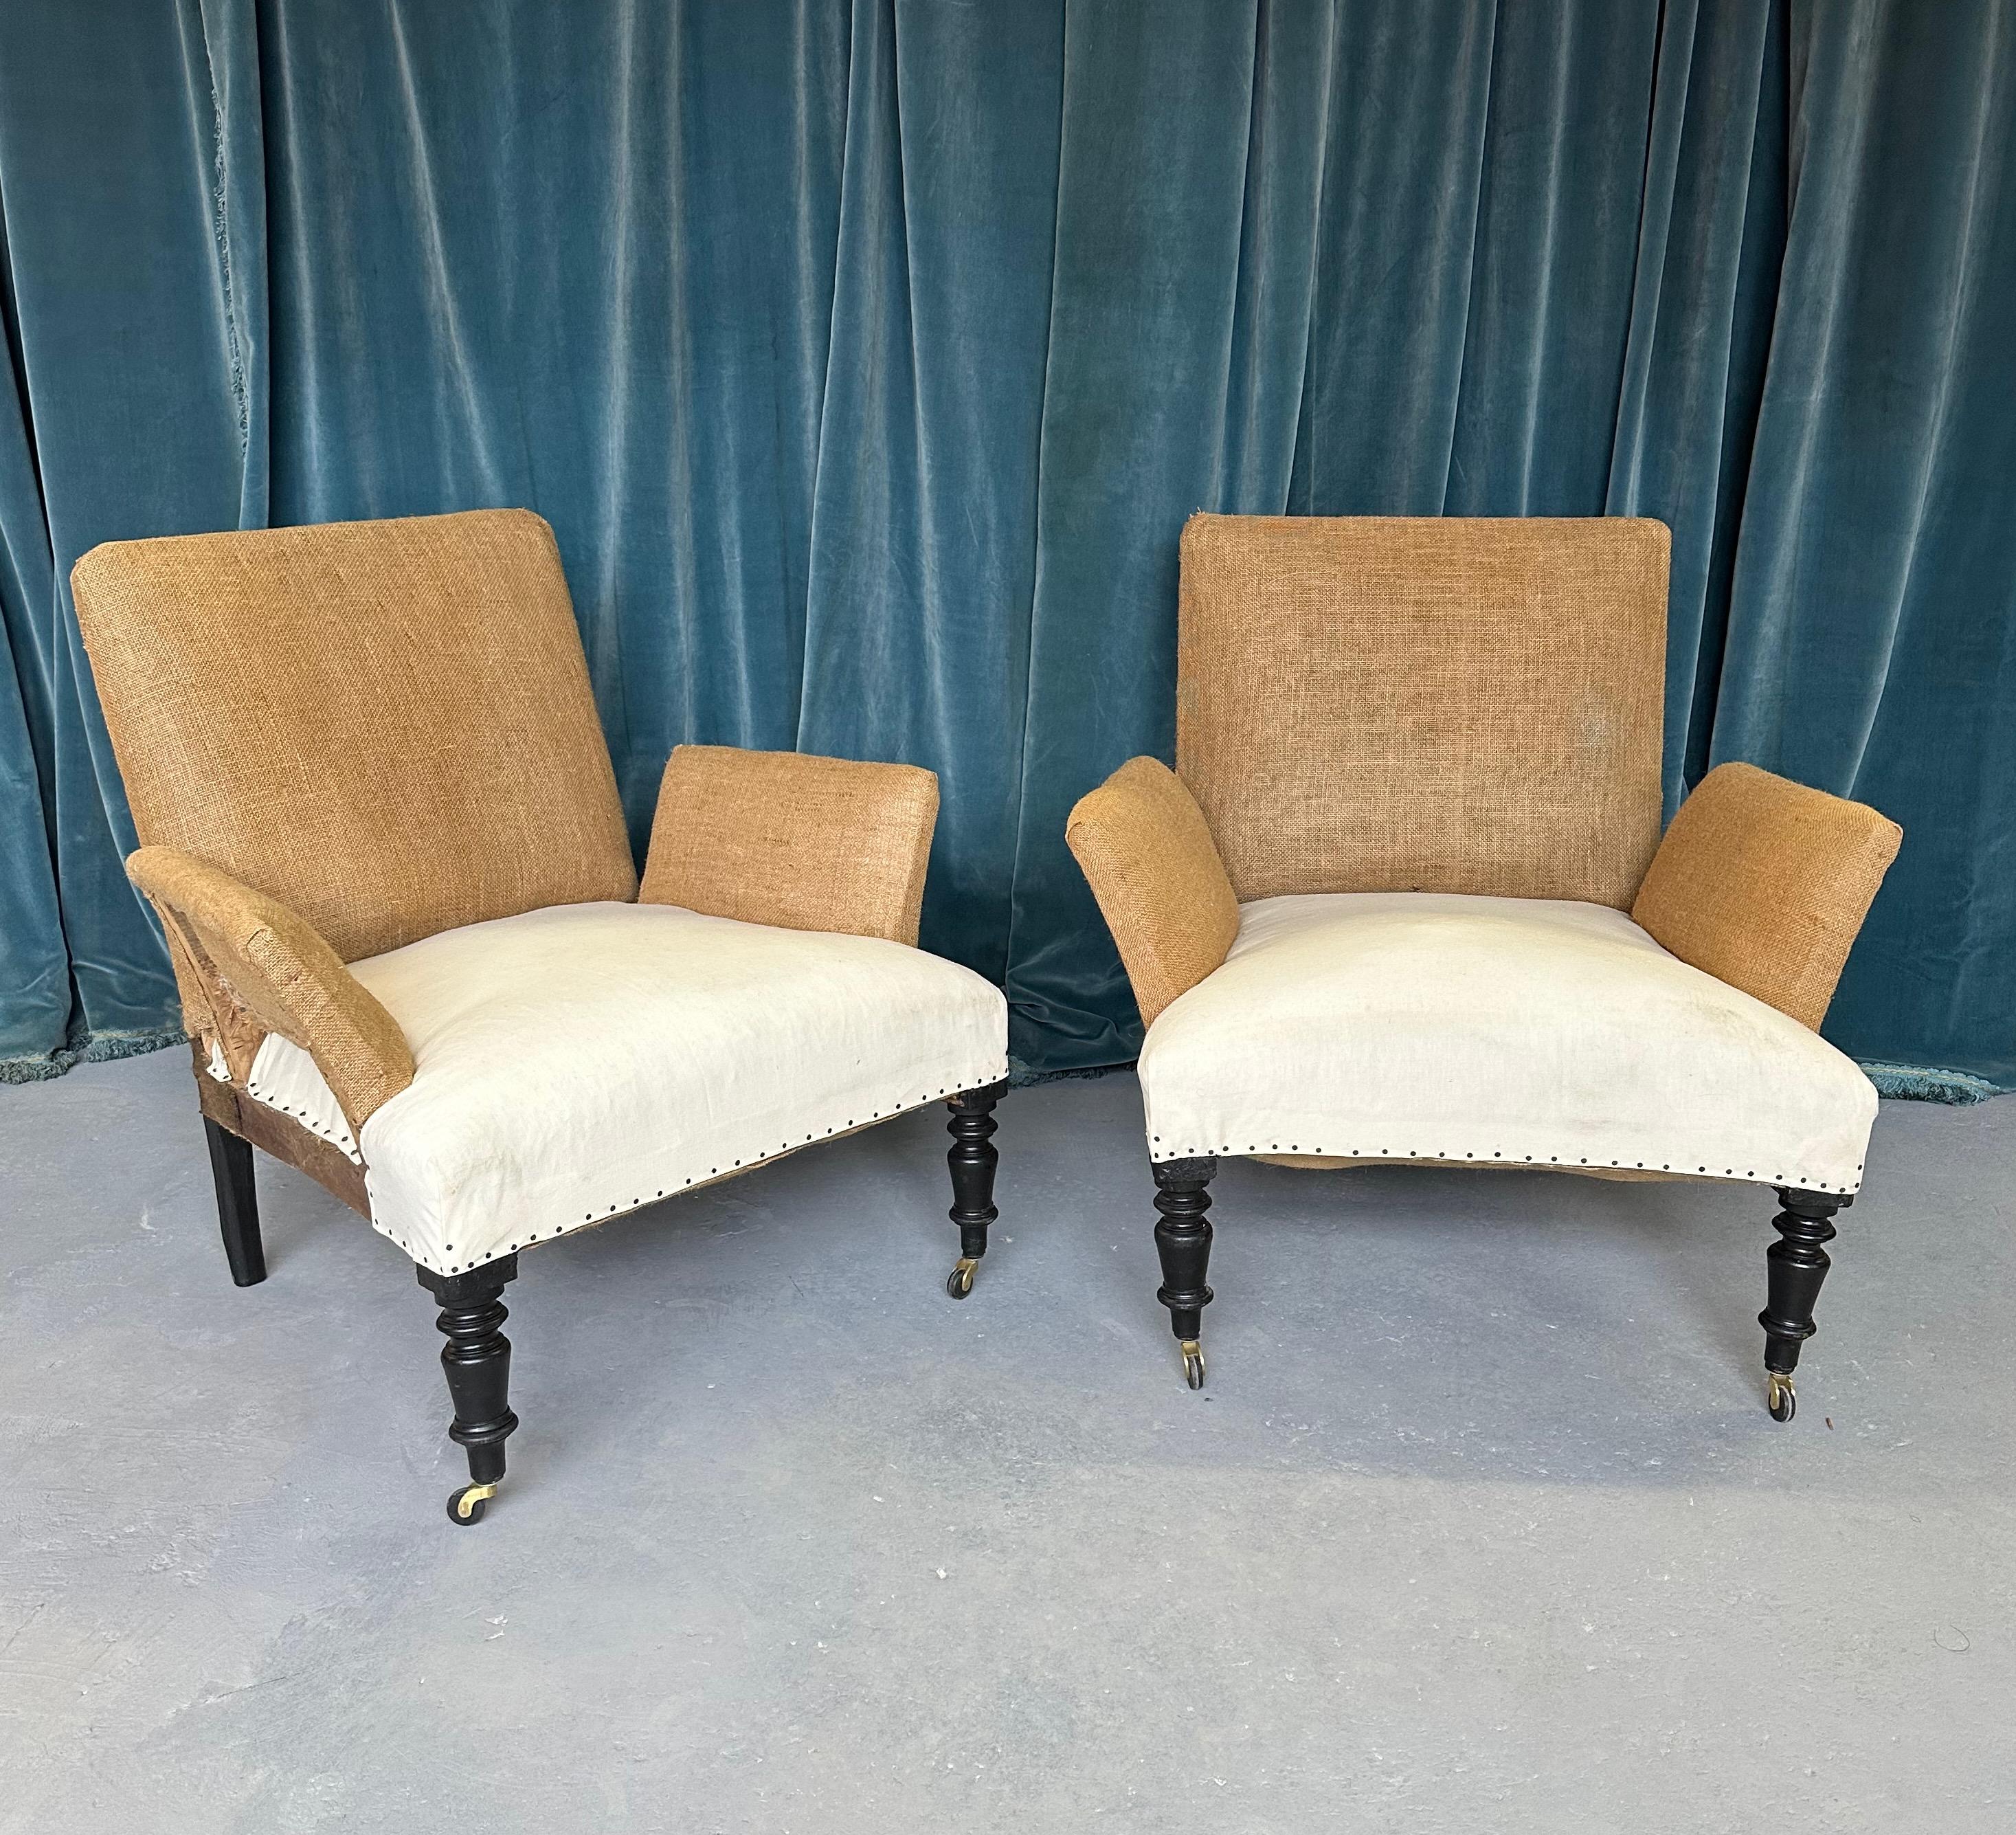 Ein interessantes Paar französischer Sessel aus dem späten 19. Jahrhundert, die bis auf das Sackleinen und den Musselin abgenommen wurden und bereit sind, gepolstert zu werden. Dieses ungewöhnliche Paar von Sesseln aus der Epoche zeichnet sich durch